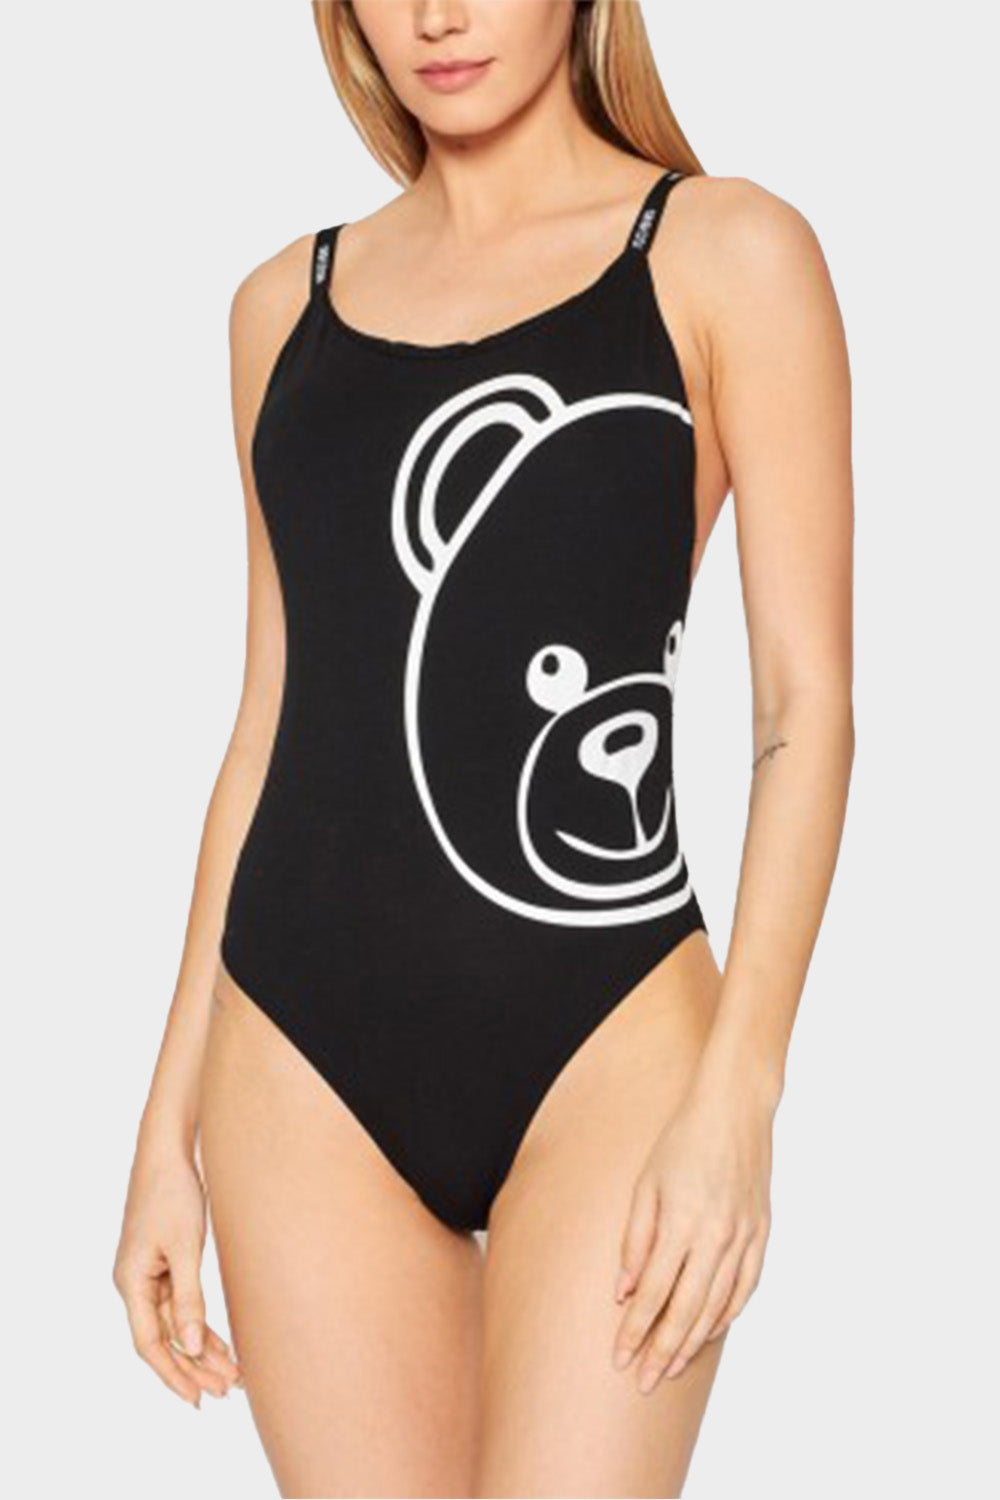 בגד גוף לנשים הדפס דובי MOSCHINO MOSCHINO Vendome online | ונדום .